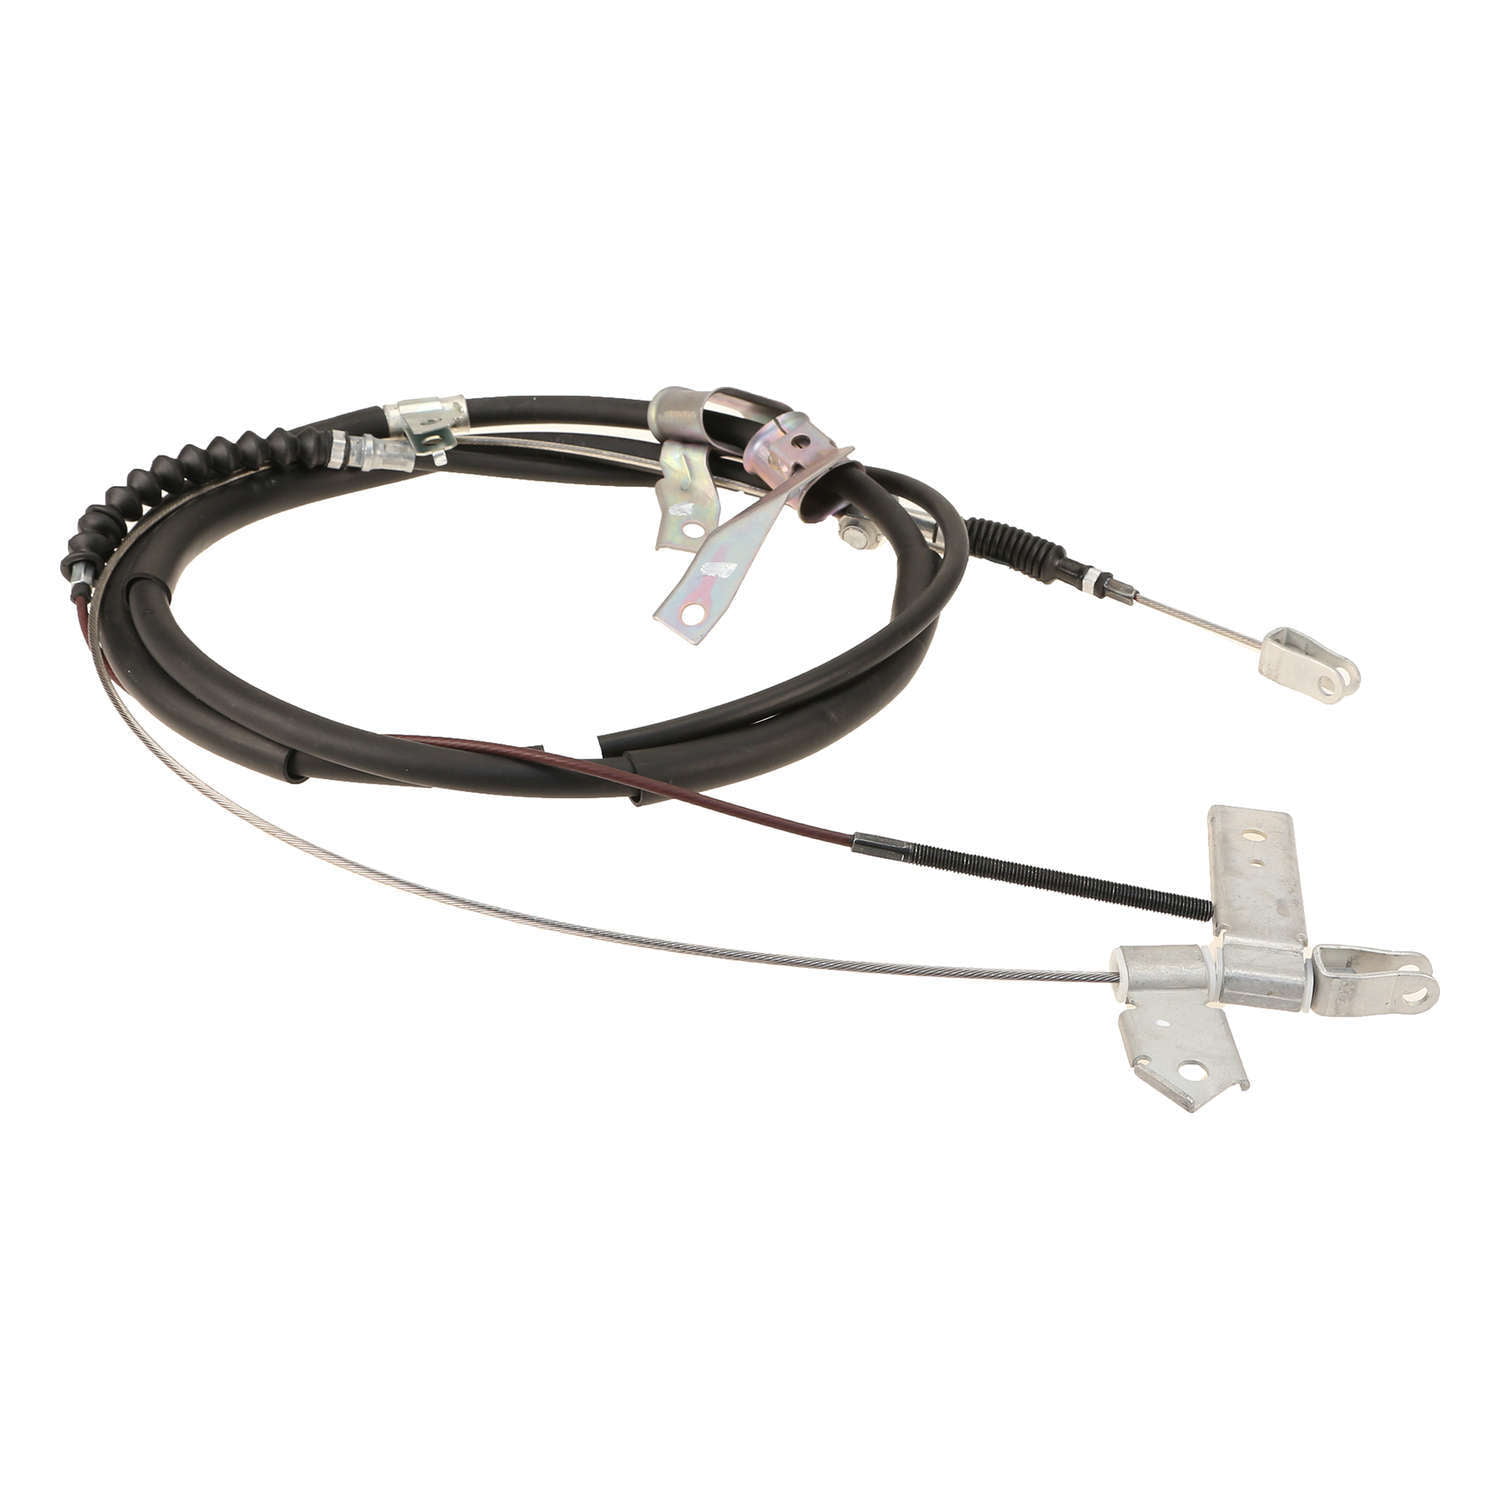 NICHE Rear Brake Cable for Honda ATV70 43460-957-003